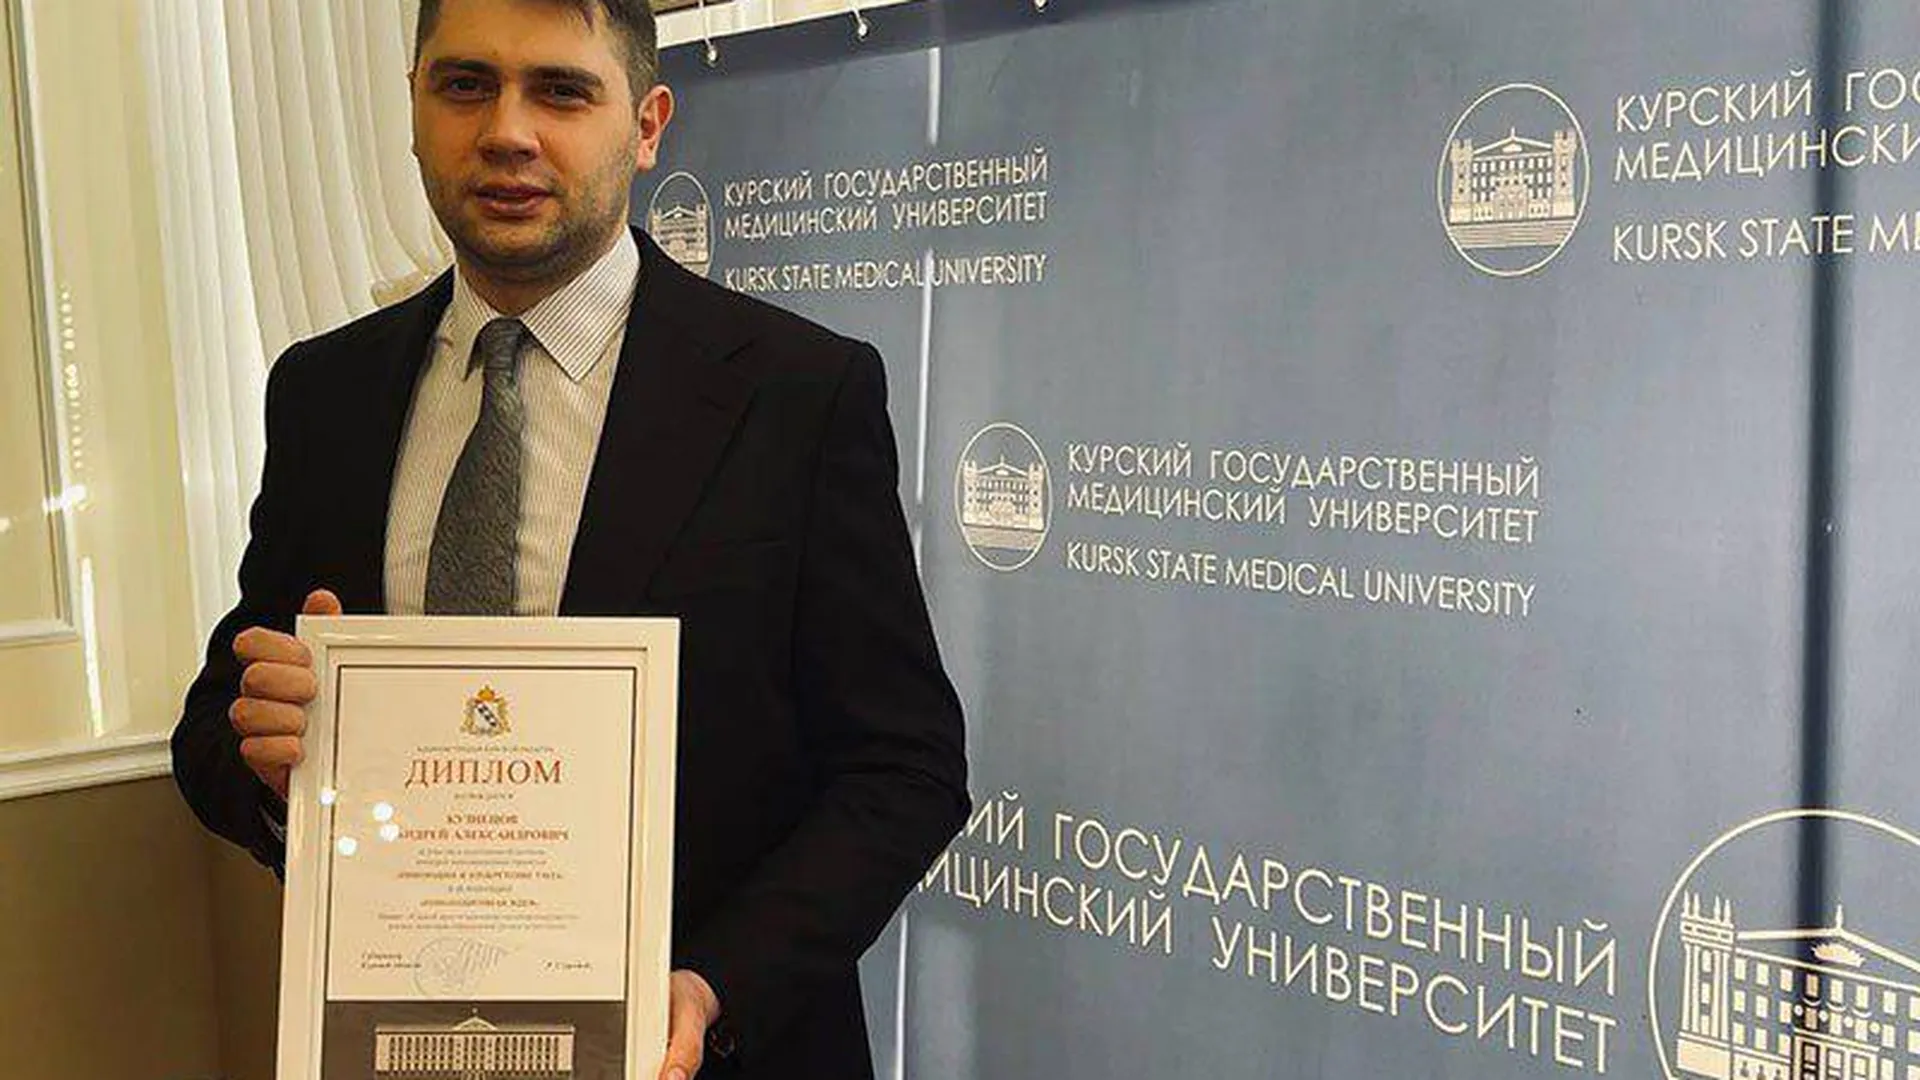 Кардиолог из Пушкино получил награду за патент на изобретение